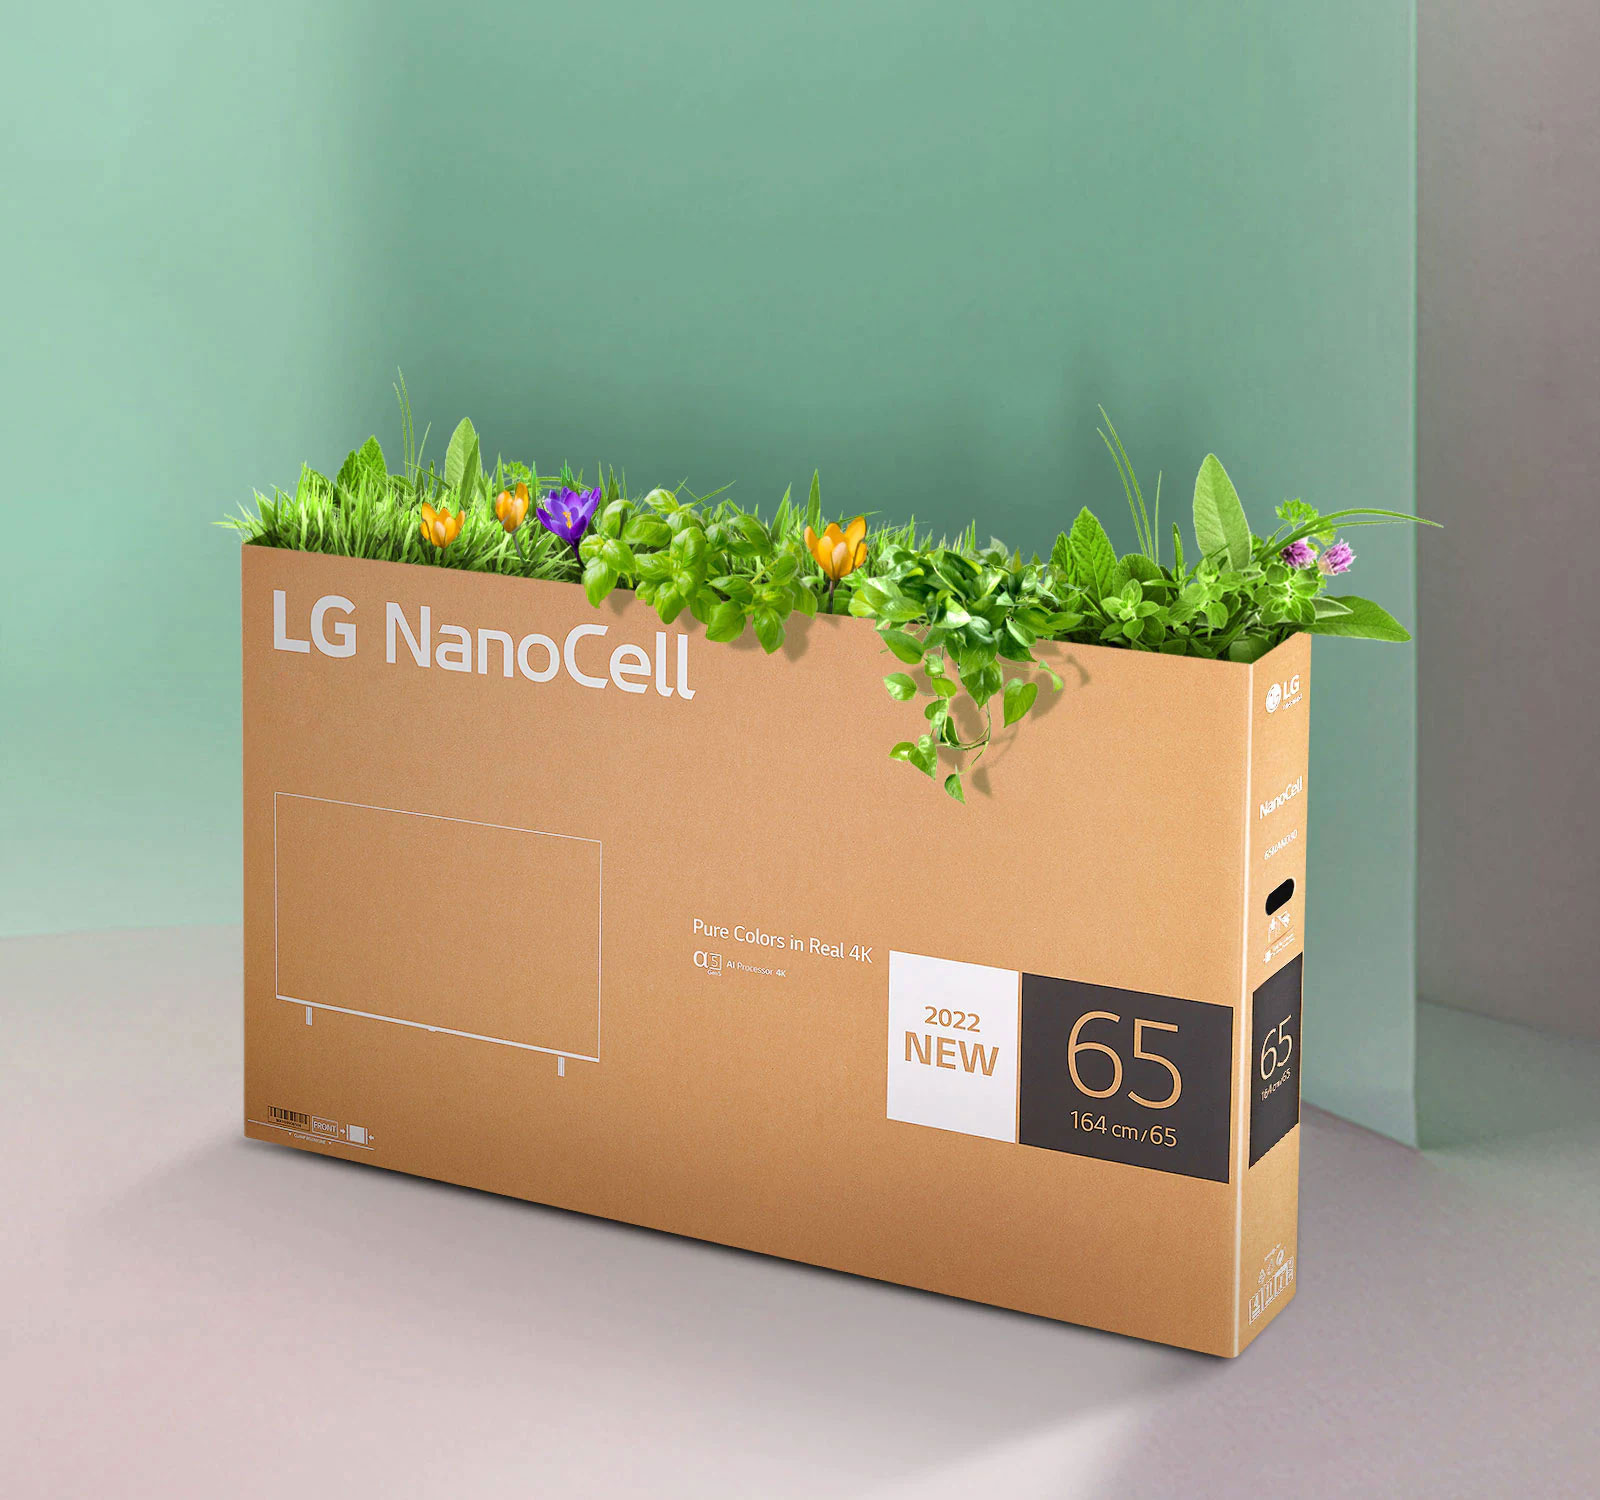 صندوق قابل لإعادة التدوير لتلفزيون LG NanoCell به أزهار ونباتات تنبت من أعلى الصندوق.